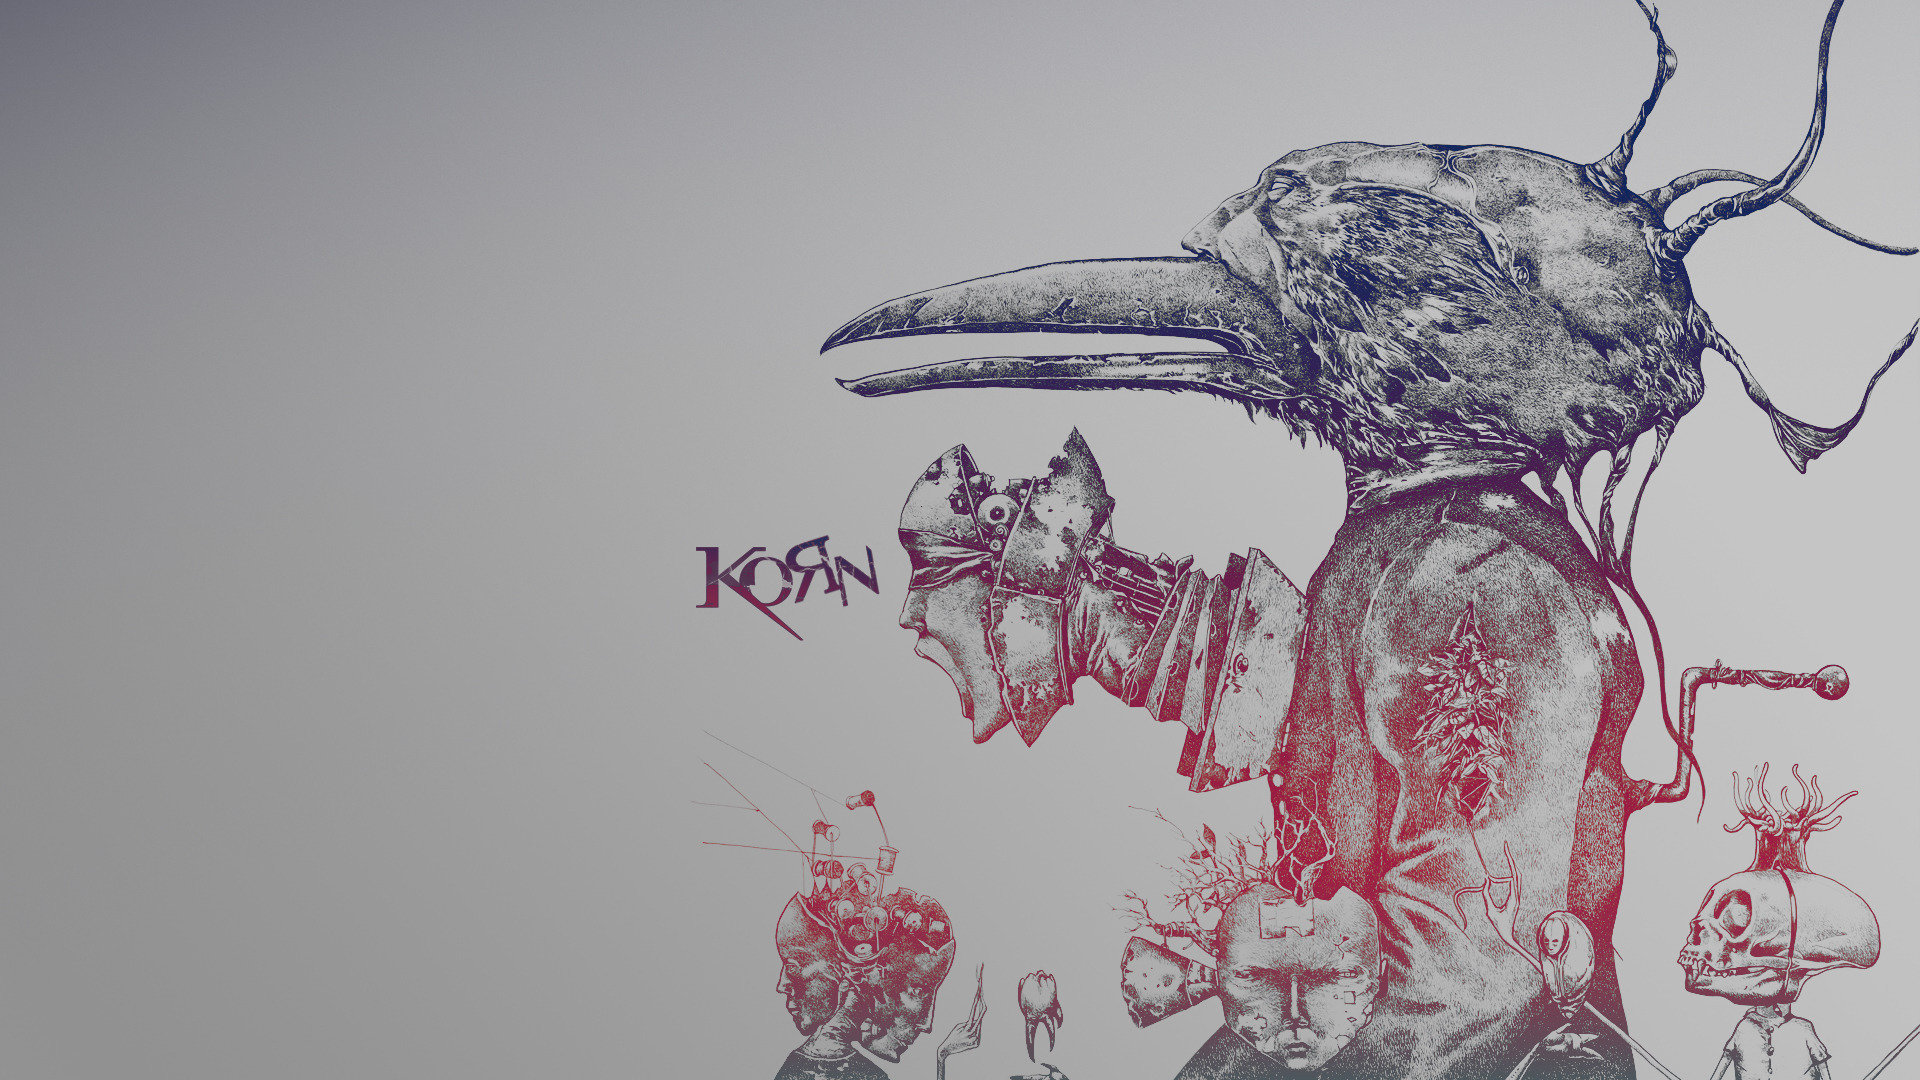 Free download Korn wallpaper ID:134778 full hd 1080p for desktop